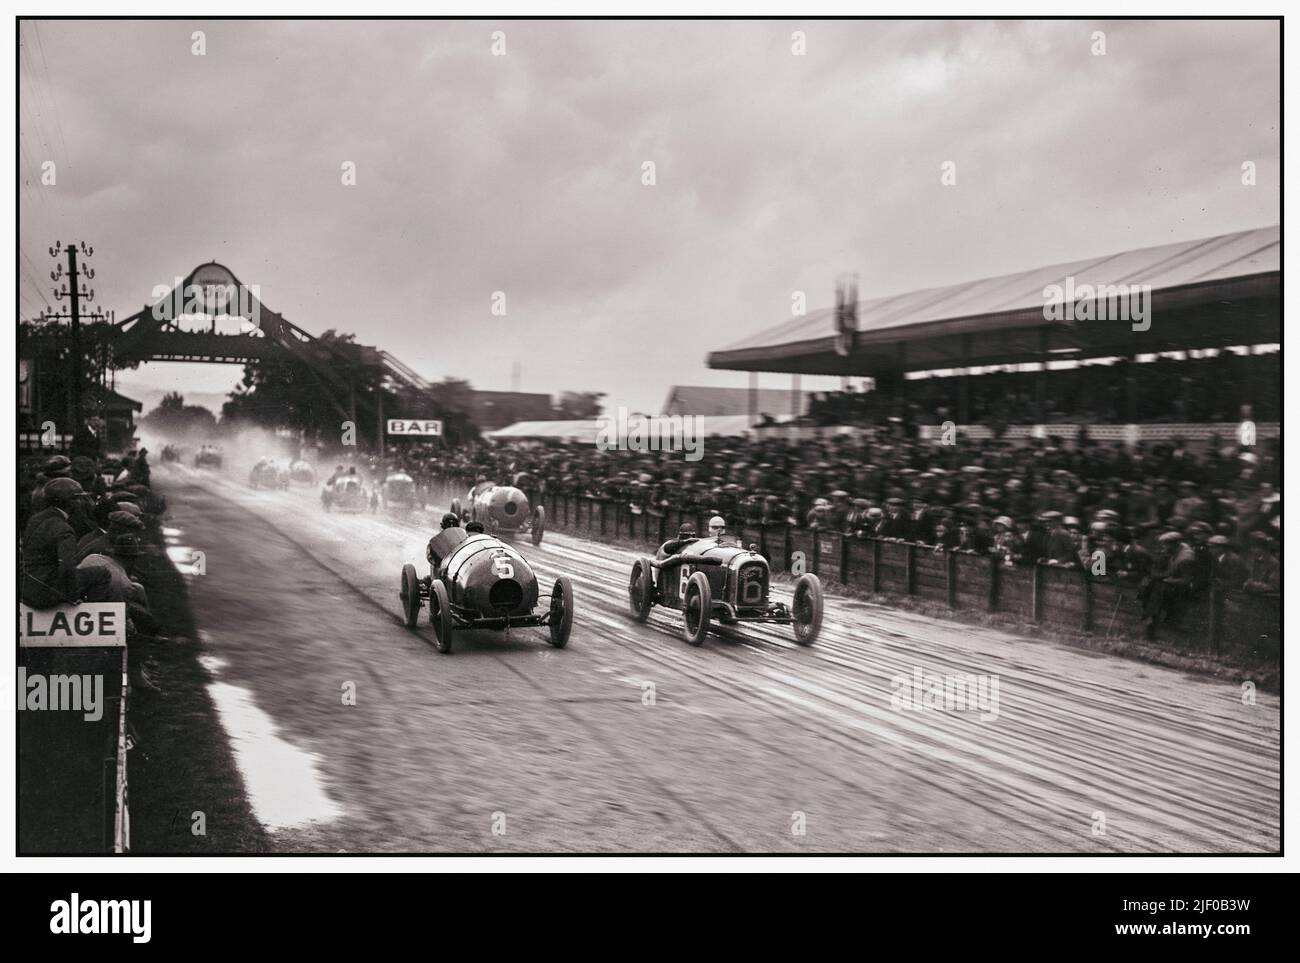 Il Gran Premio di Francia 1922 inizia in una giornata bagnata e opaca. Il Gran Premio di Francia 1922 (ex Gran Premio di l'Automobile Club de France) è stato una gara automobilistica Grand Prix svoltasi a Strasburgo il 15 luglio 1922. La gara è stata percorsa su 60 giri del circuito 13,38km per una distanza totale di poco più di 800km ed è stata vinta da Felice Nazzaro alla guida di una Fiat. Questa gara è nota come il primo Gran Premio a presentare una partenza massaggiata. Foto Stock